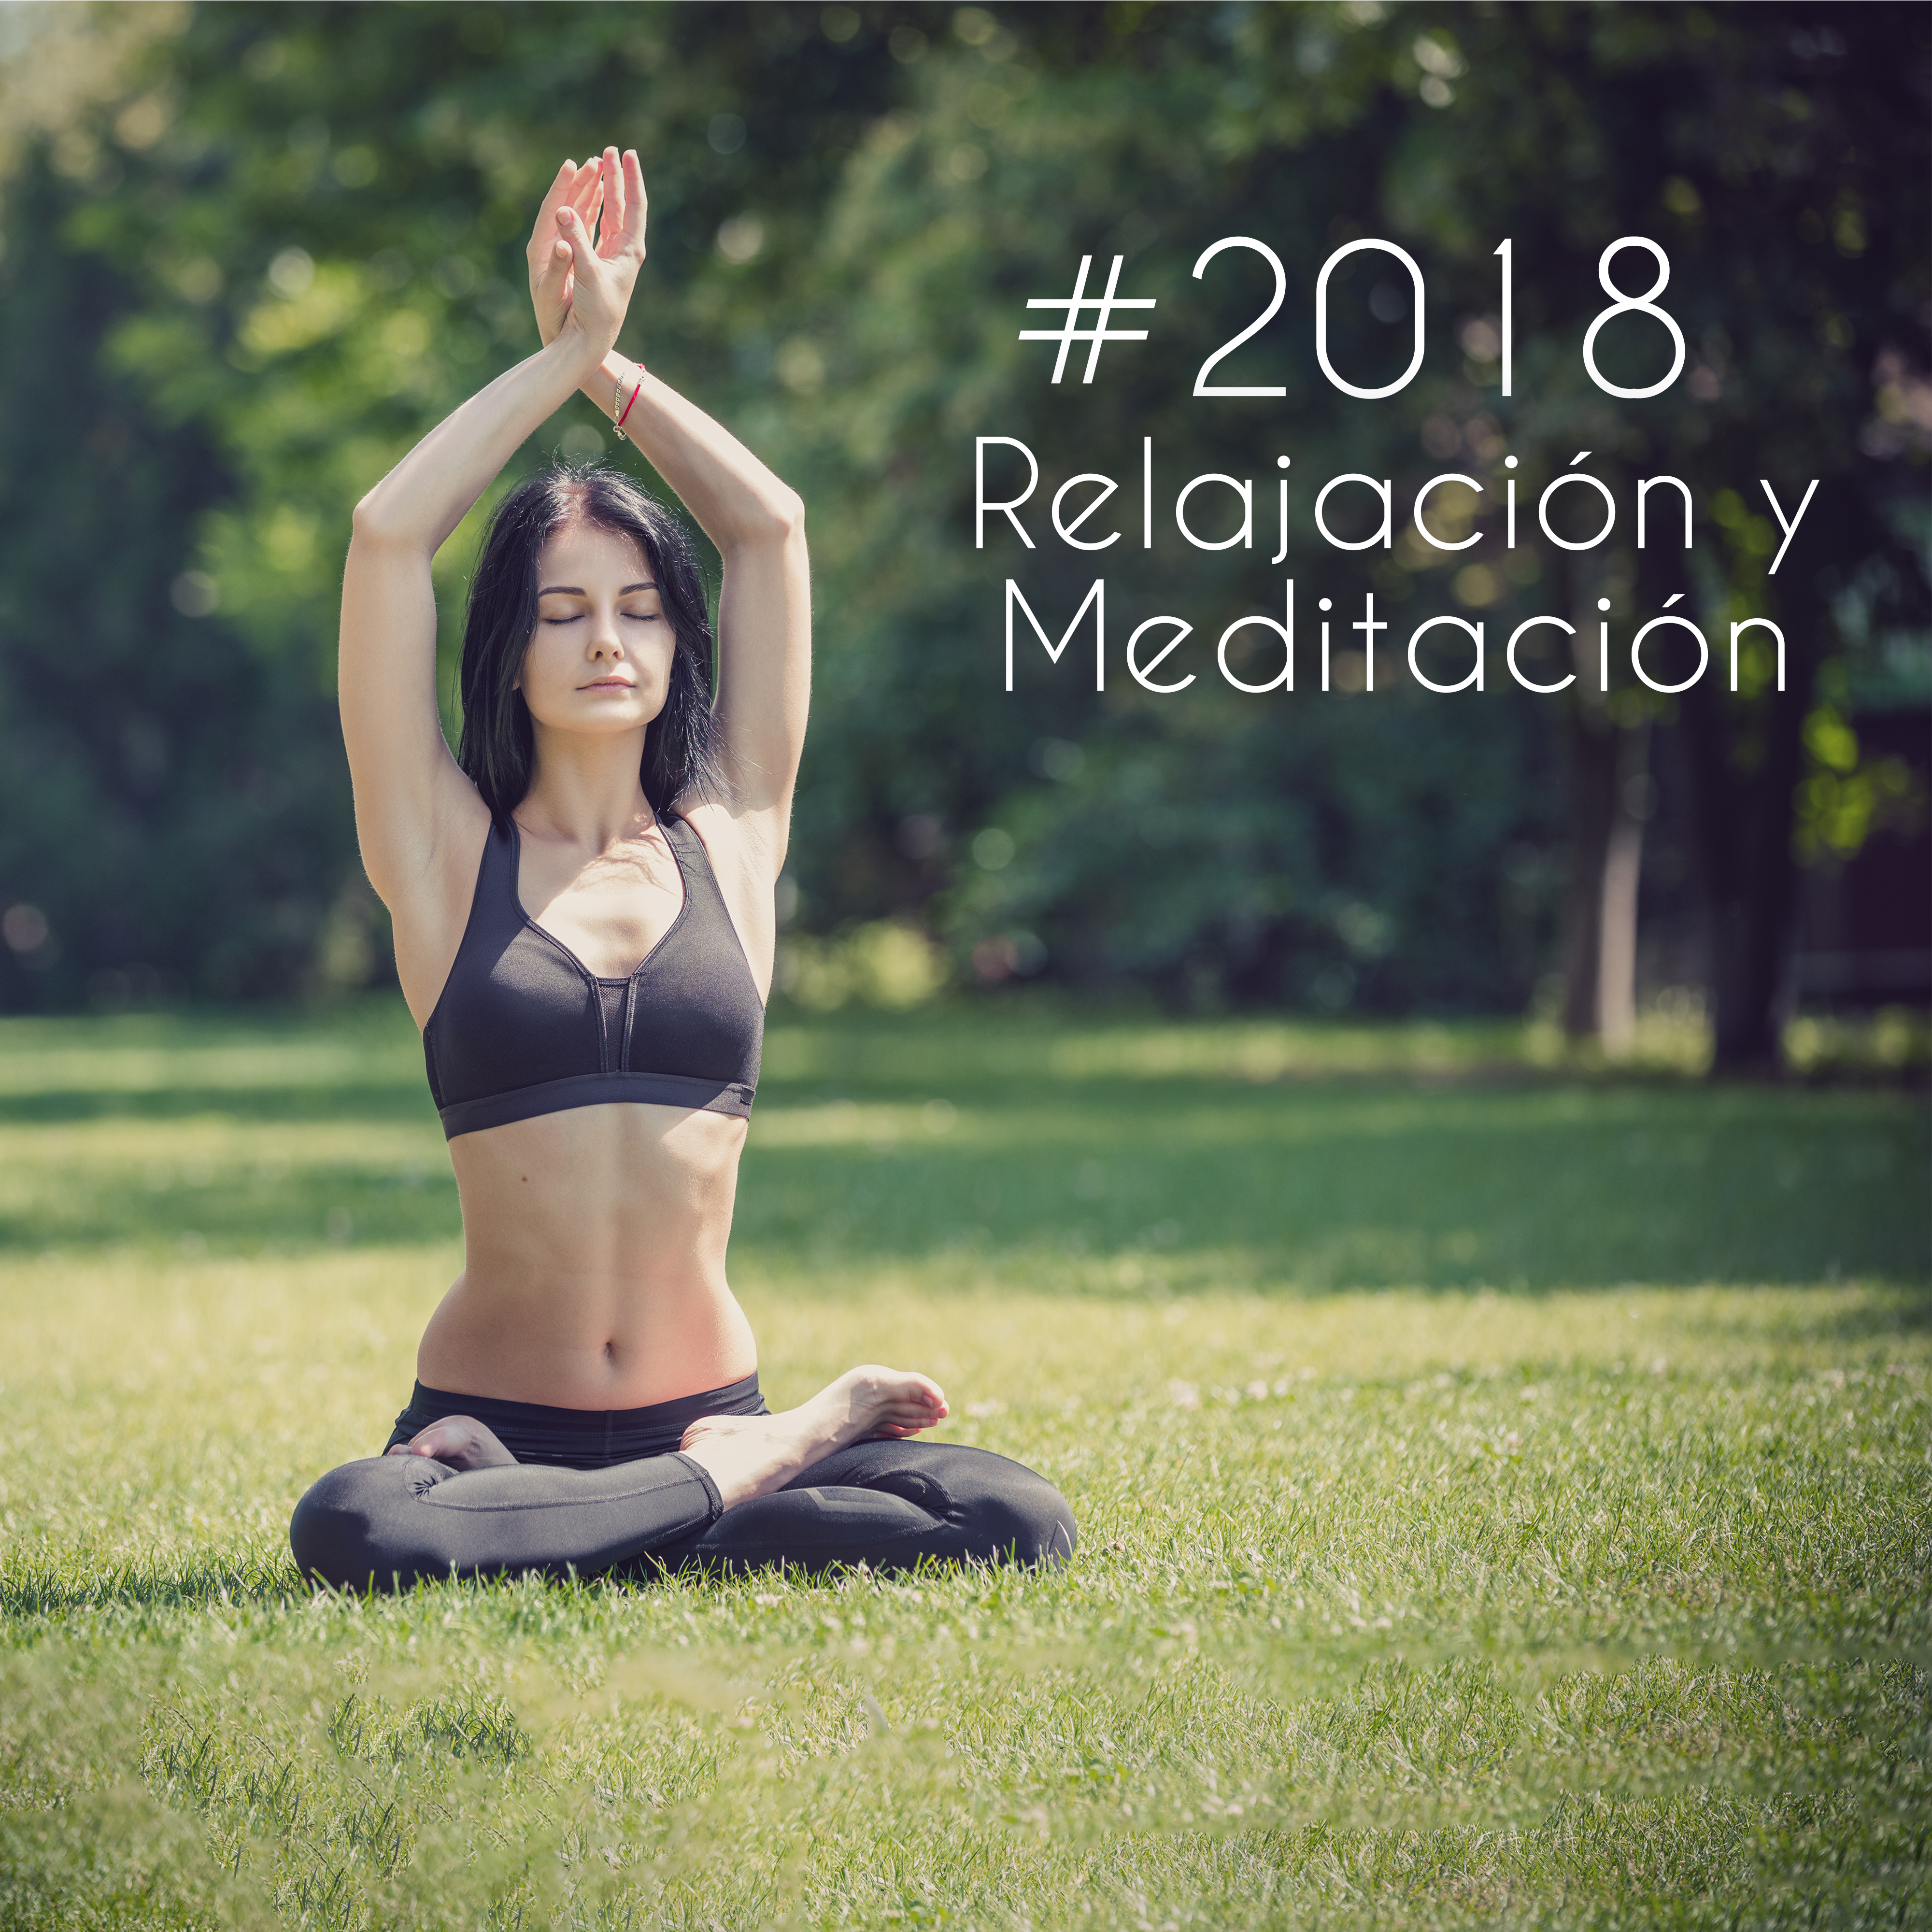 2018 Relajacio n y Meditacio n